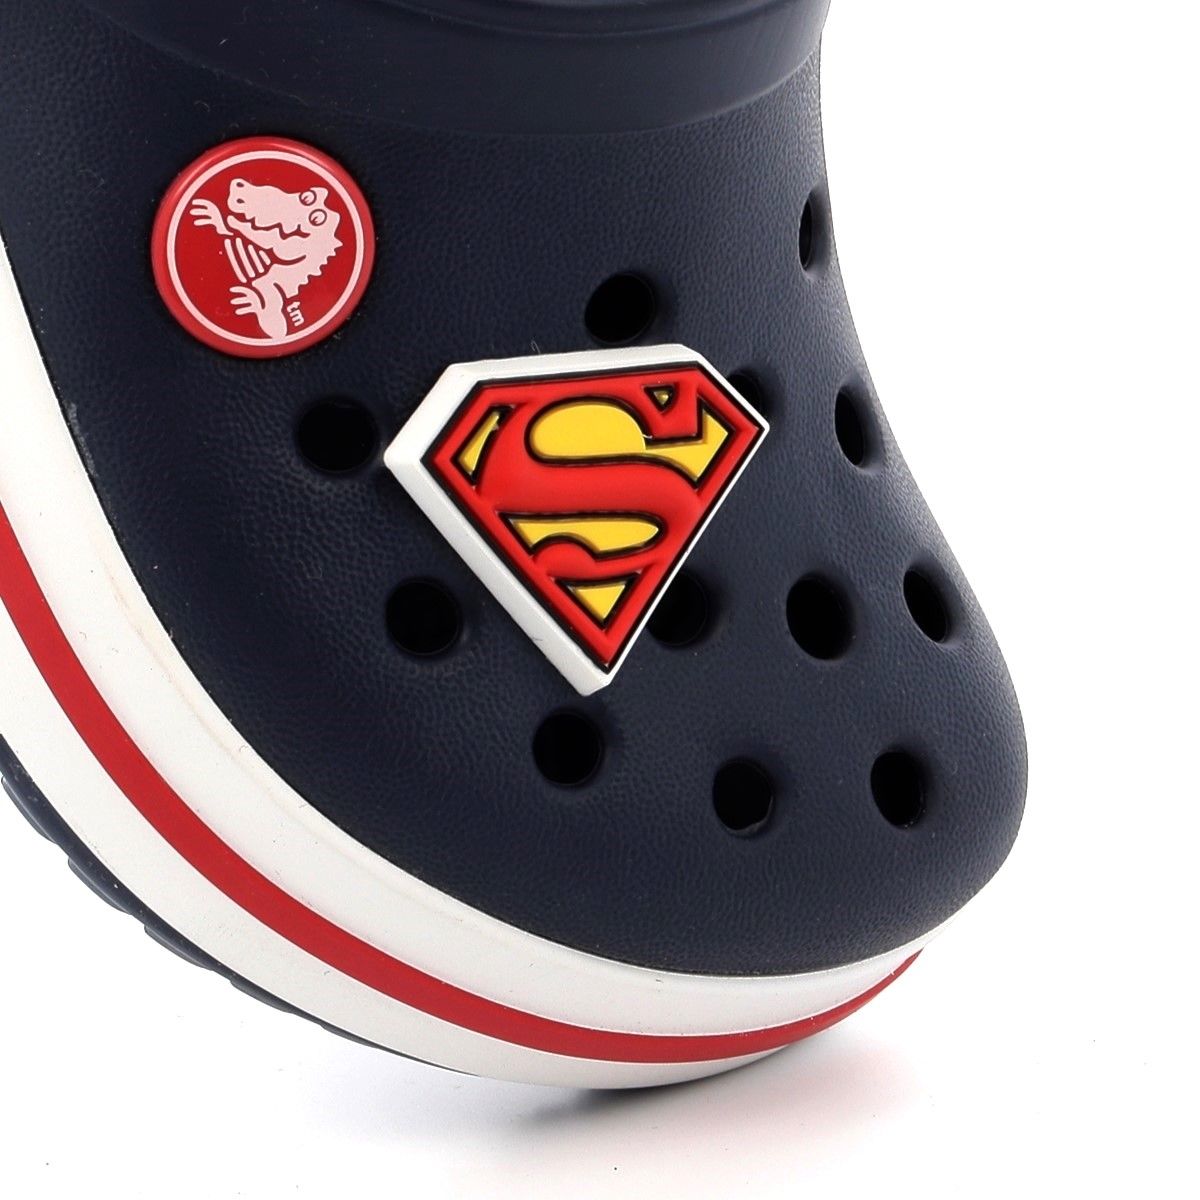 Αξεσουάρ Διακοσμητικό Παπουτσιών Crocs Superman Logo Χρώματος Κόκκινο 10006905